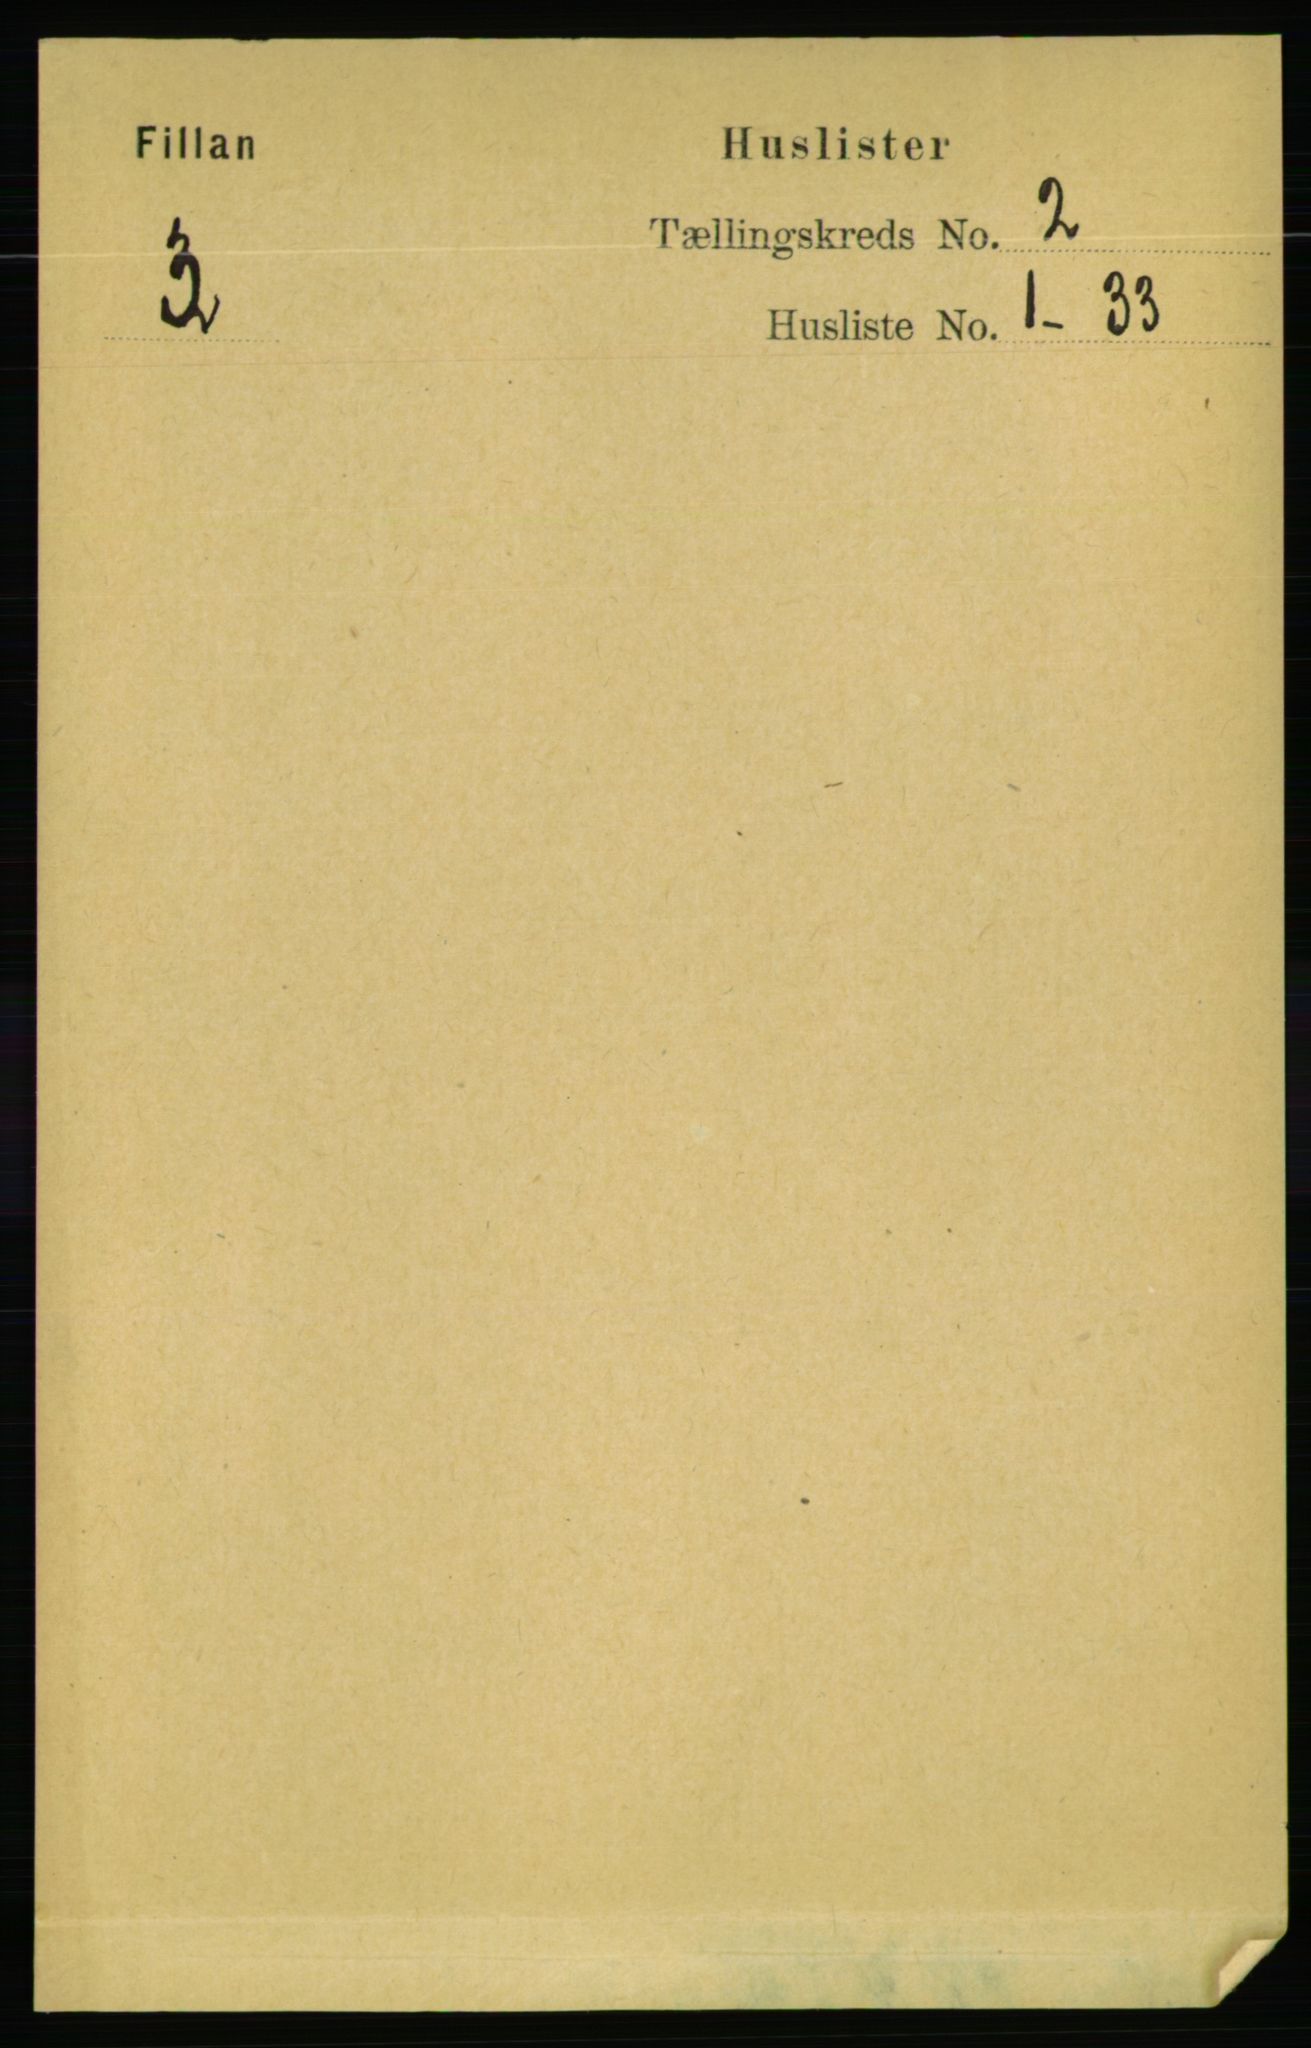 RA, Folketelling 1891 for 1616 Fillan herred, 1891, s. 188